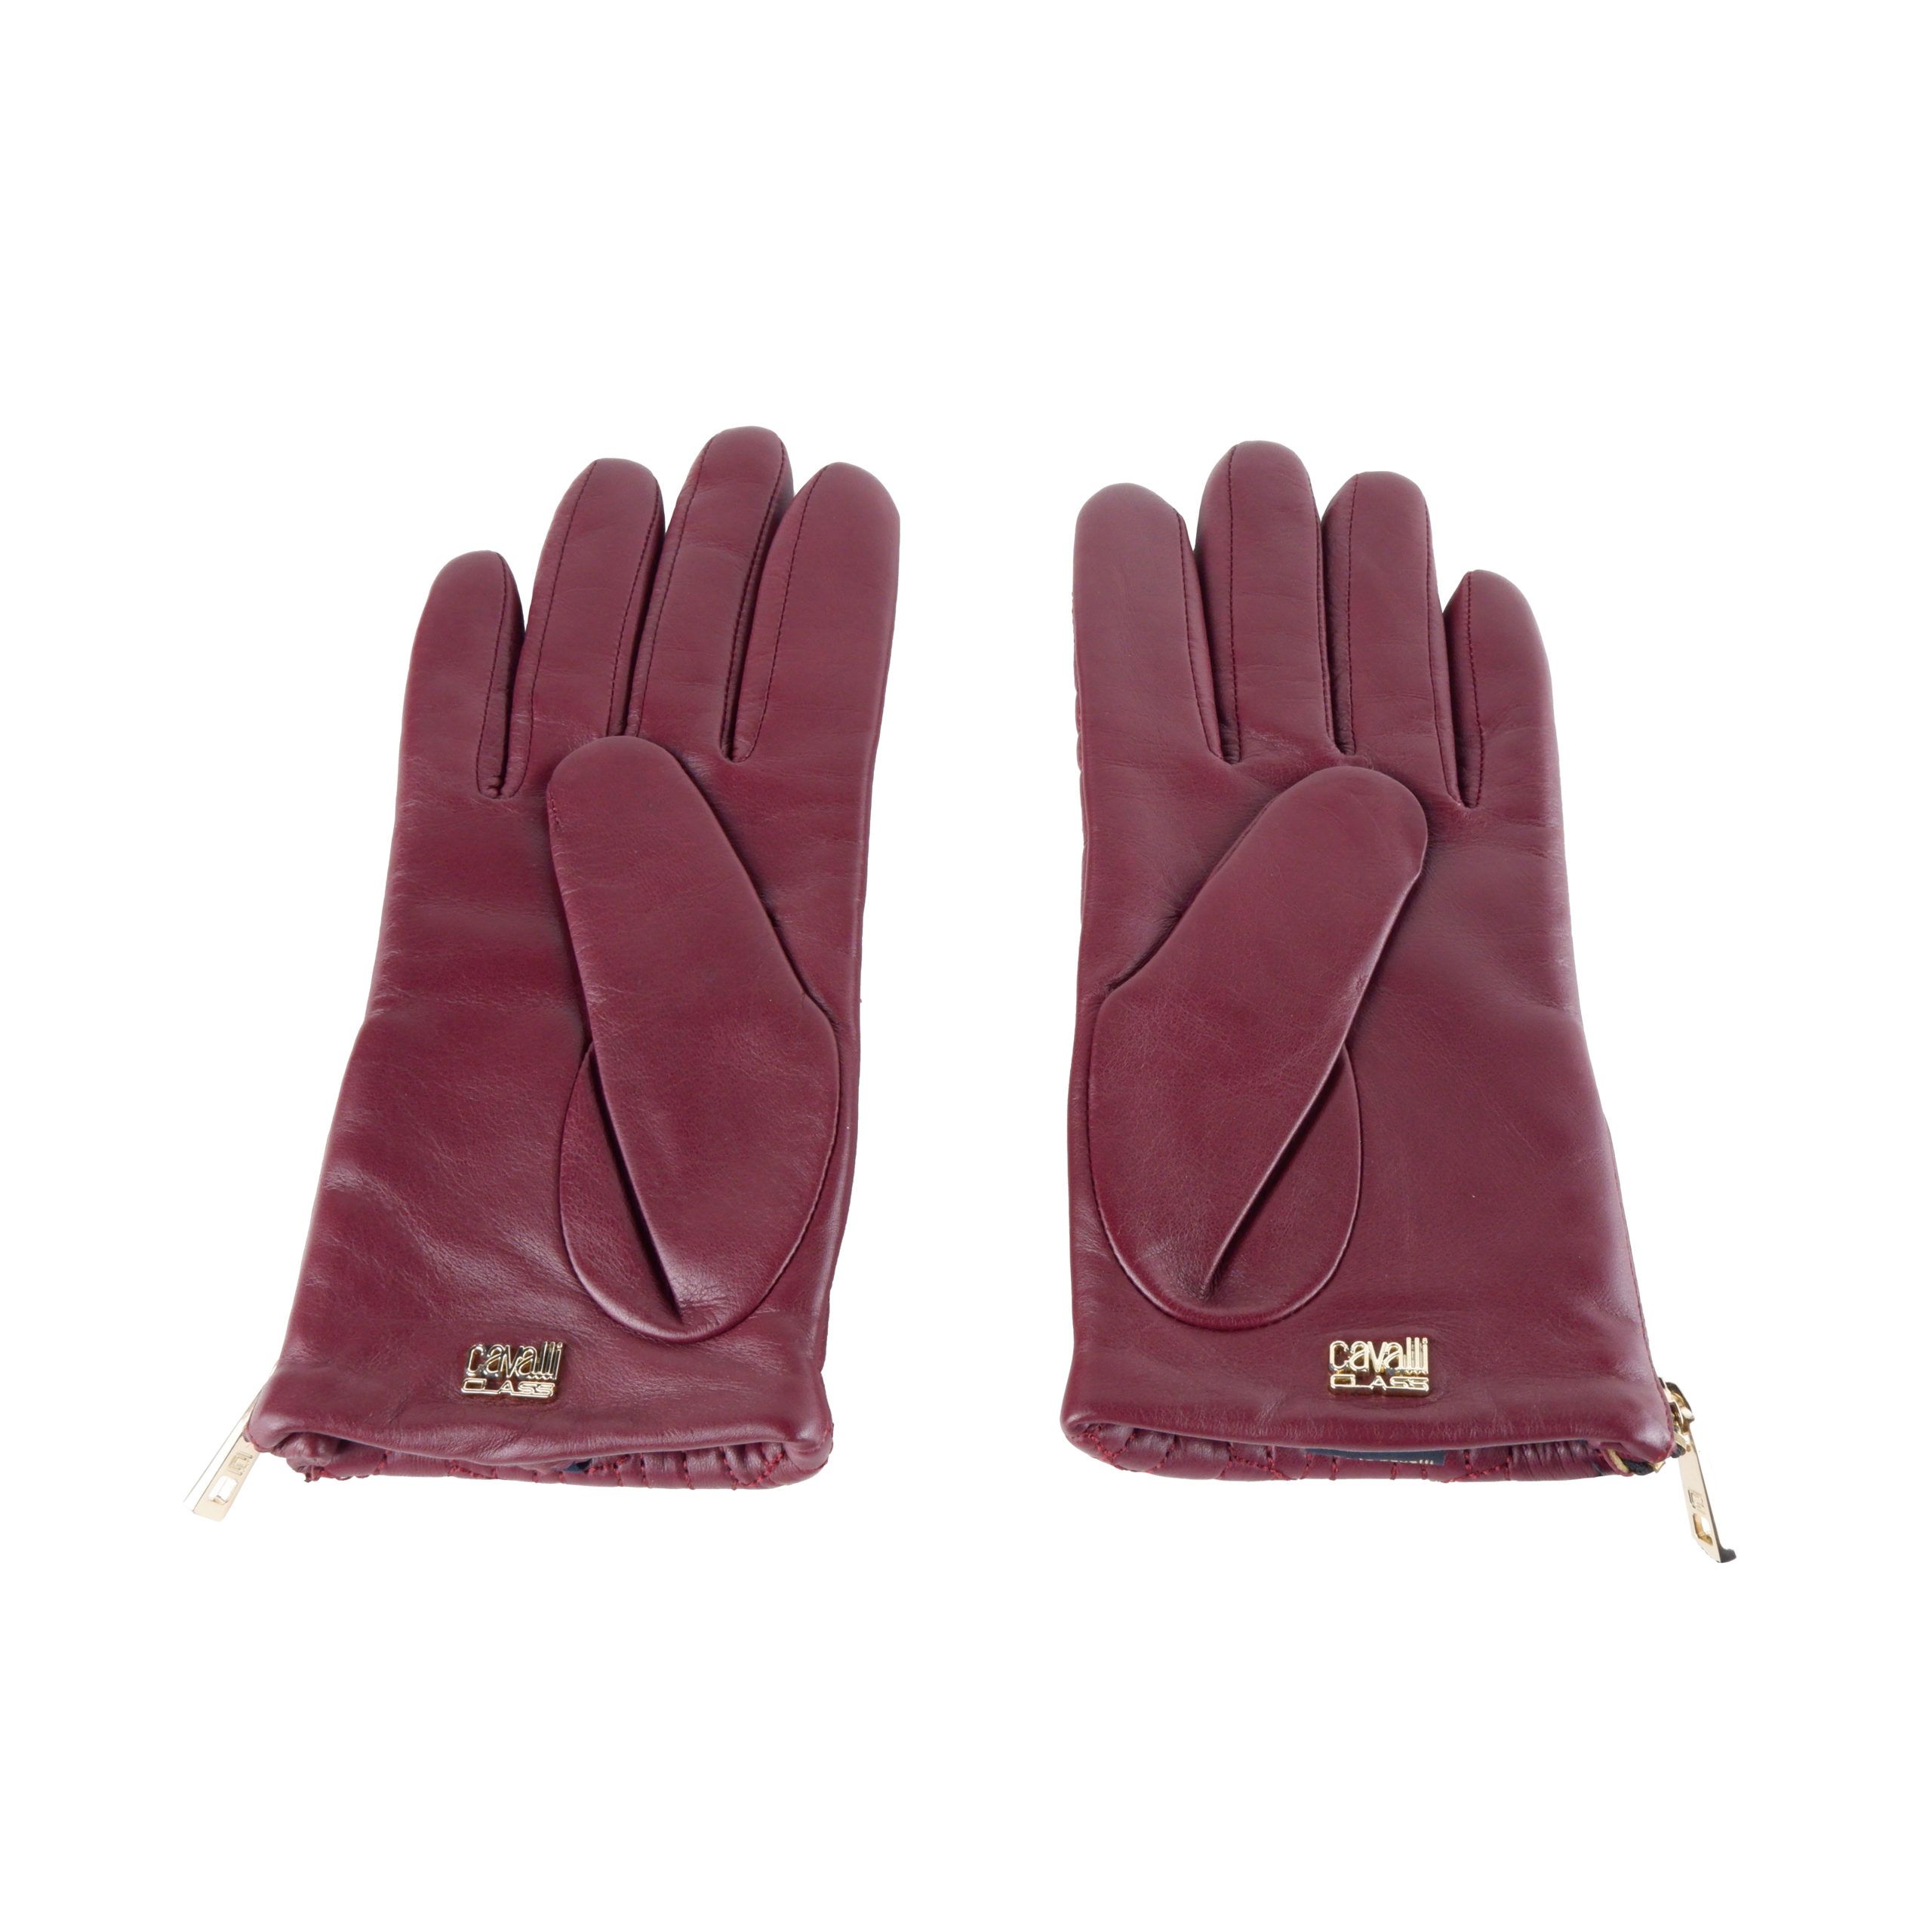 Elegant Burgundy Lambskin Gloves